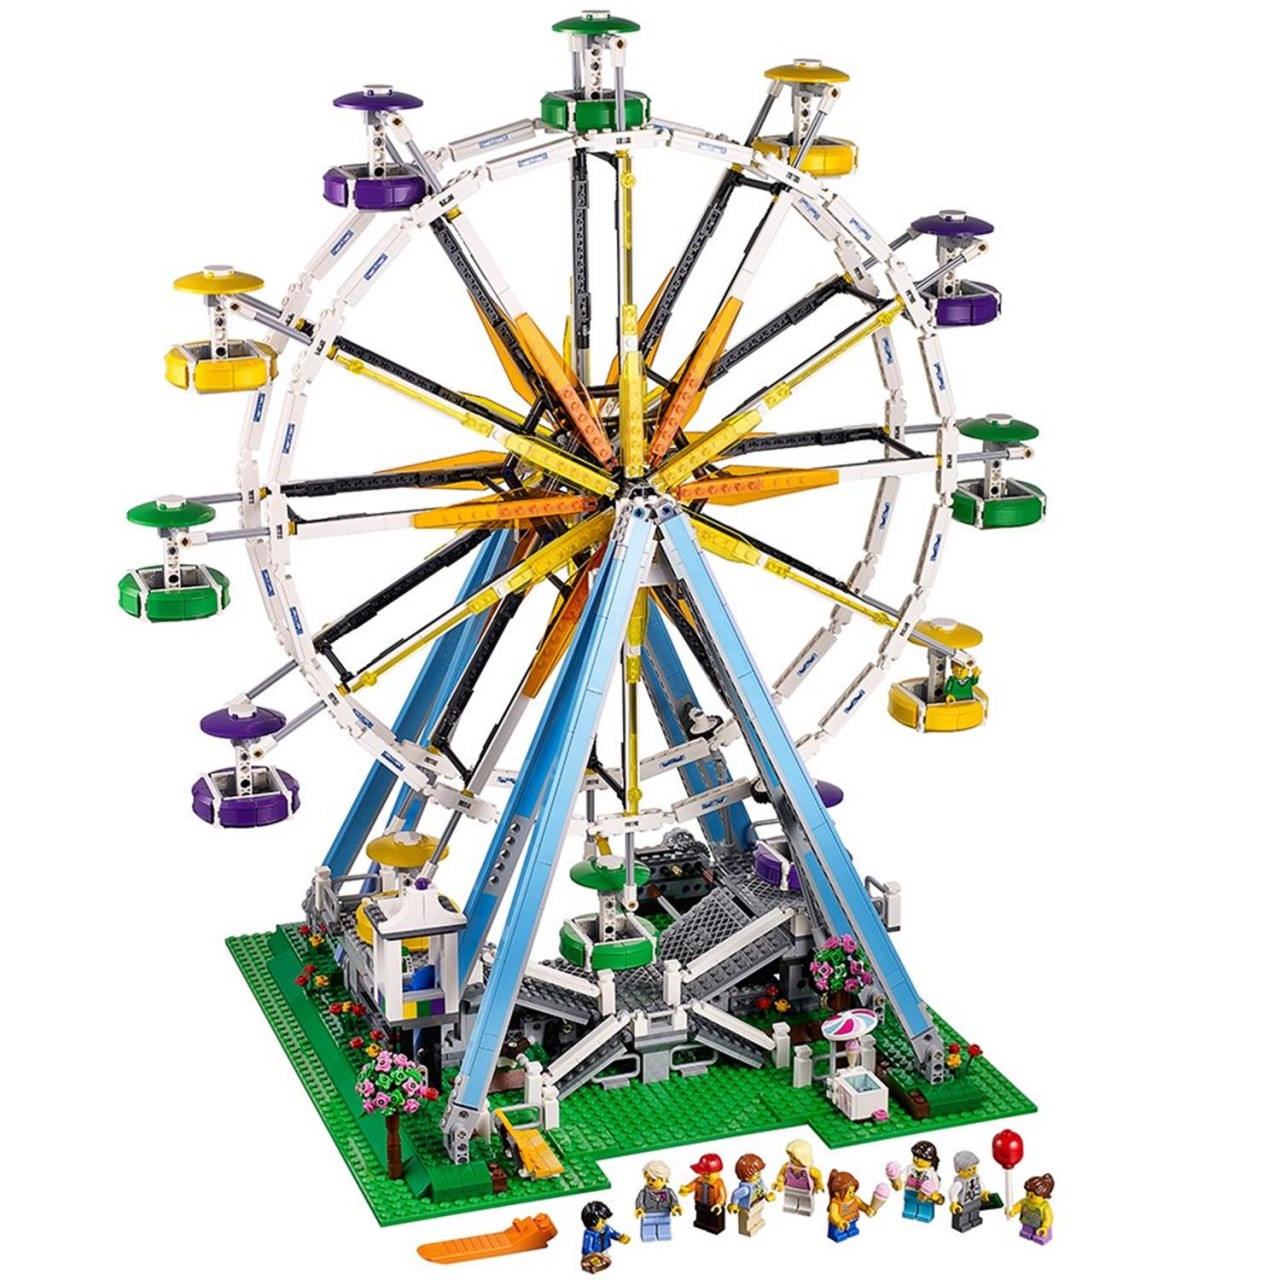 LEGO CREATOR 10247 Ferris Wheel